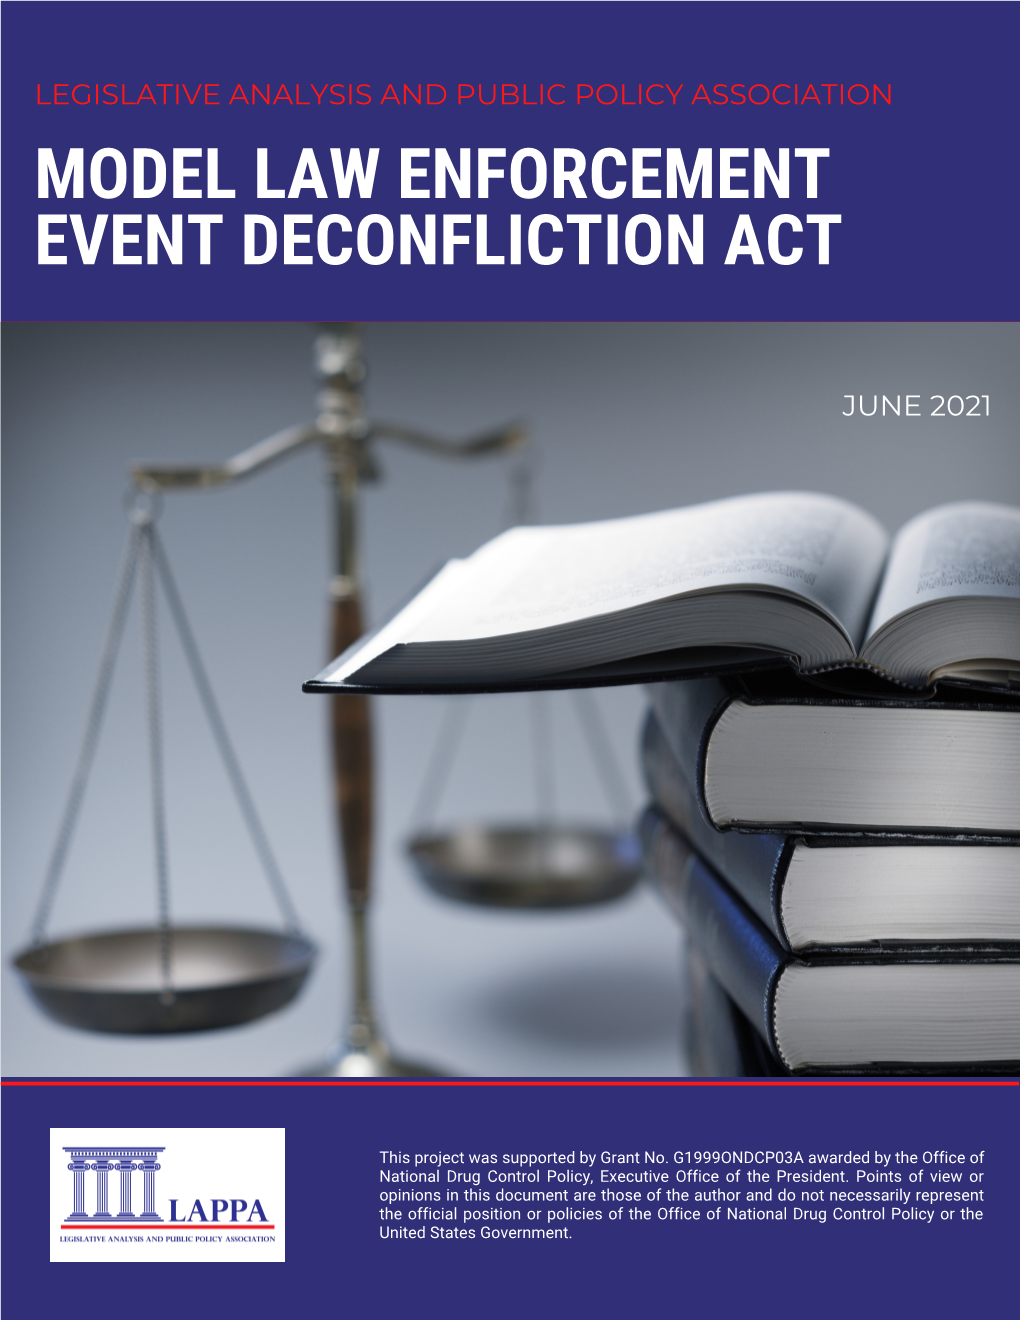 Model Law Enforcement Event Deconfliction Act